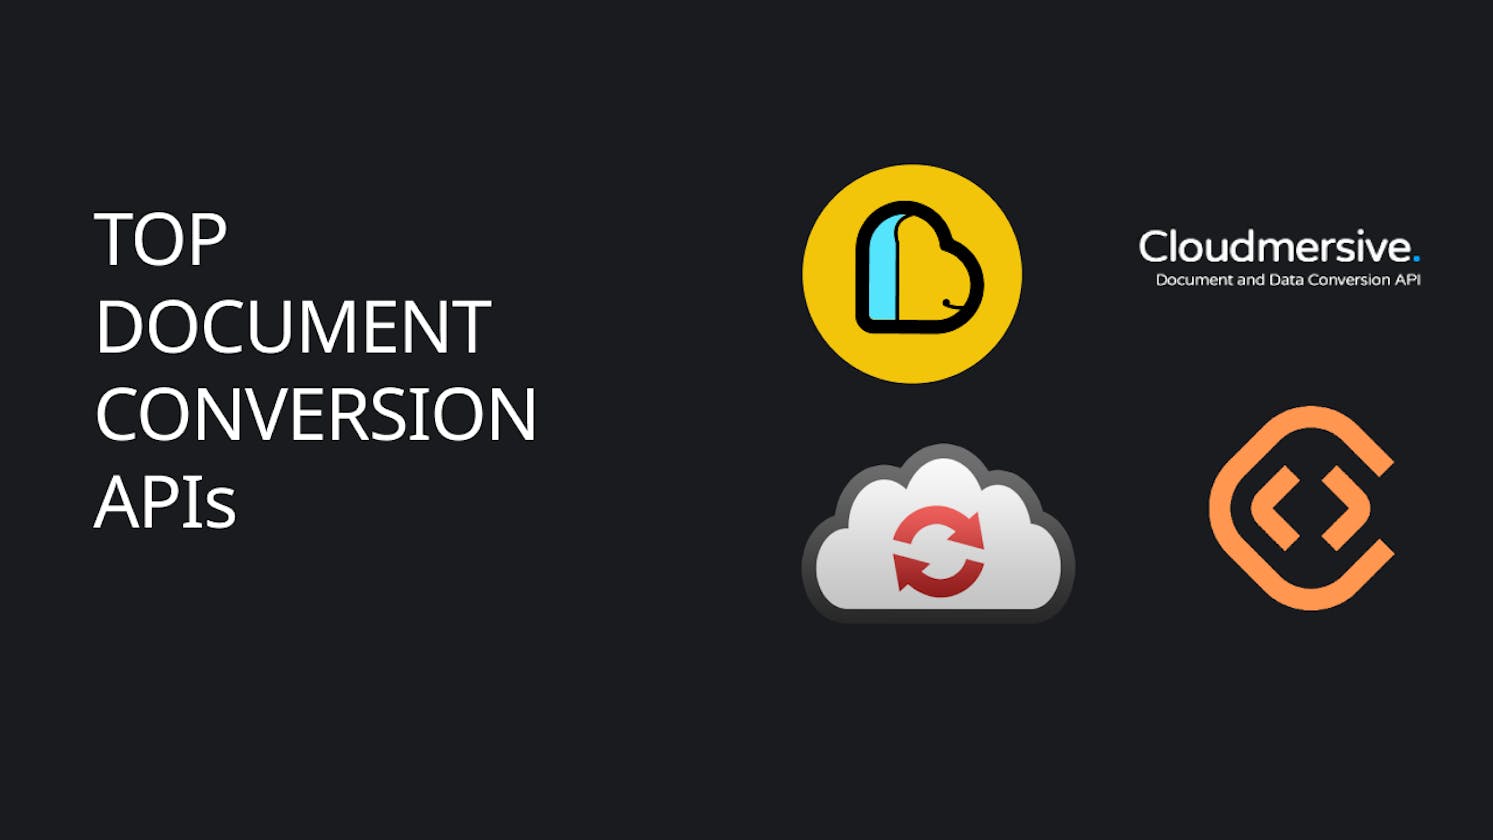 Exploring the Top Document Conversion APIs: ApyHub vs. CloudConvert vs. ConvertAPI vs. Cloudmersive